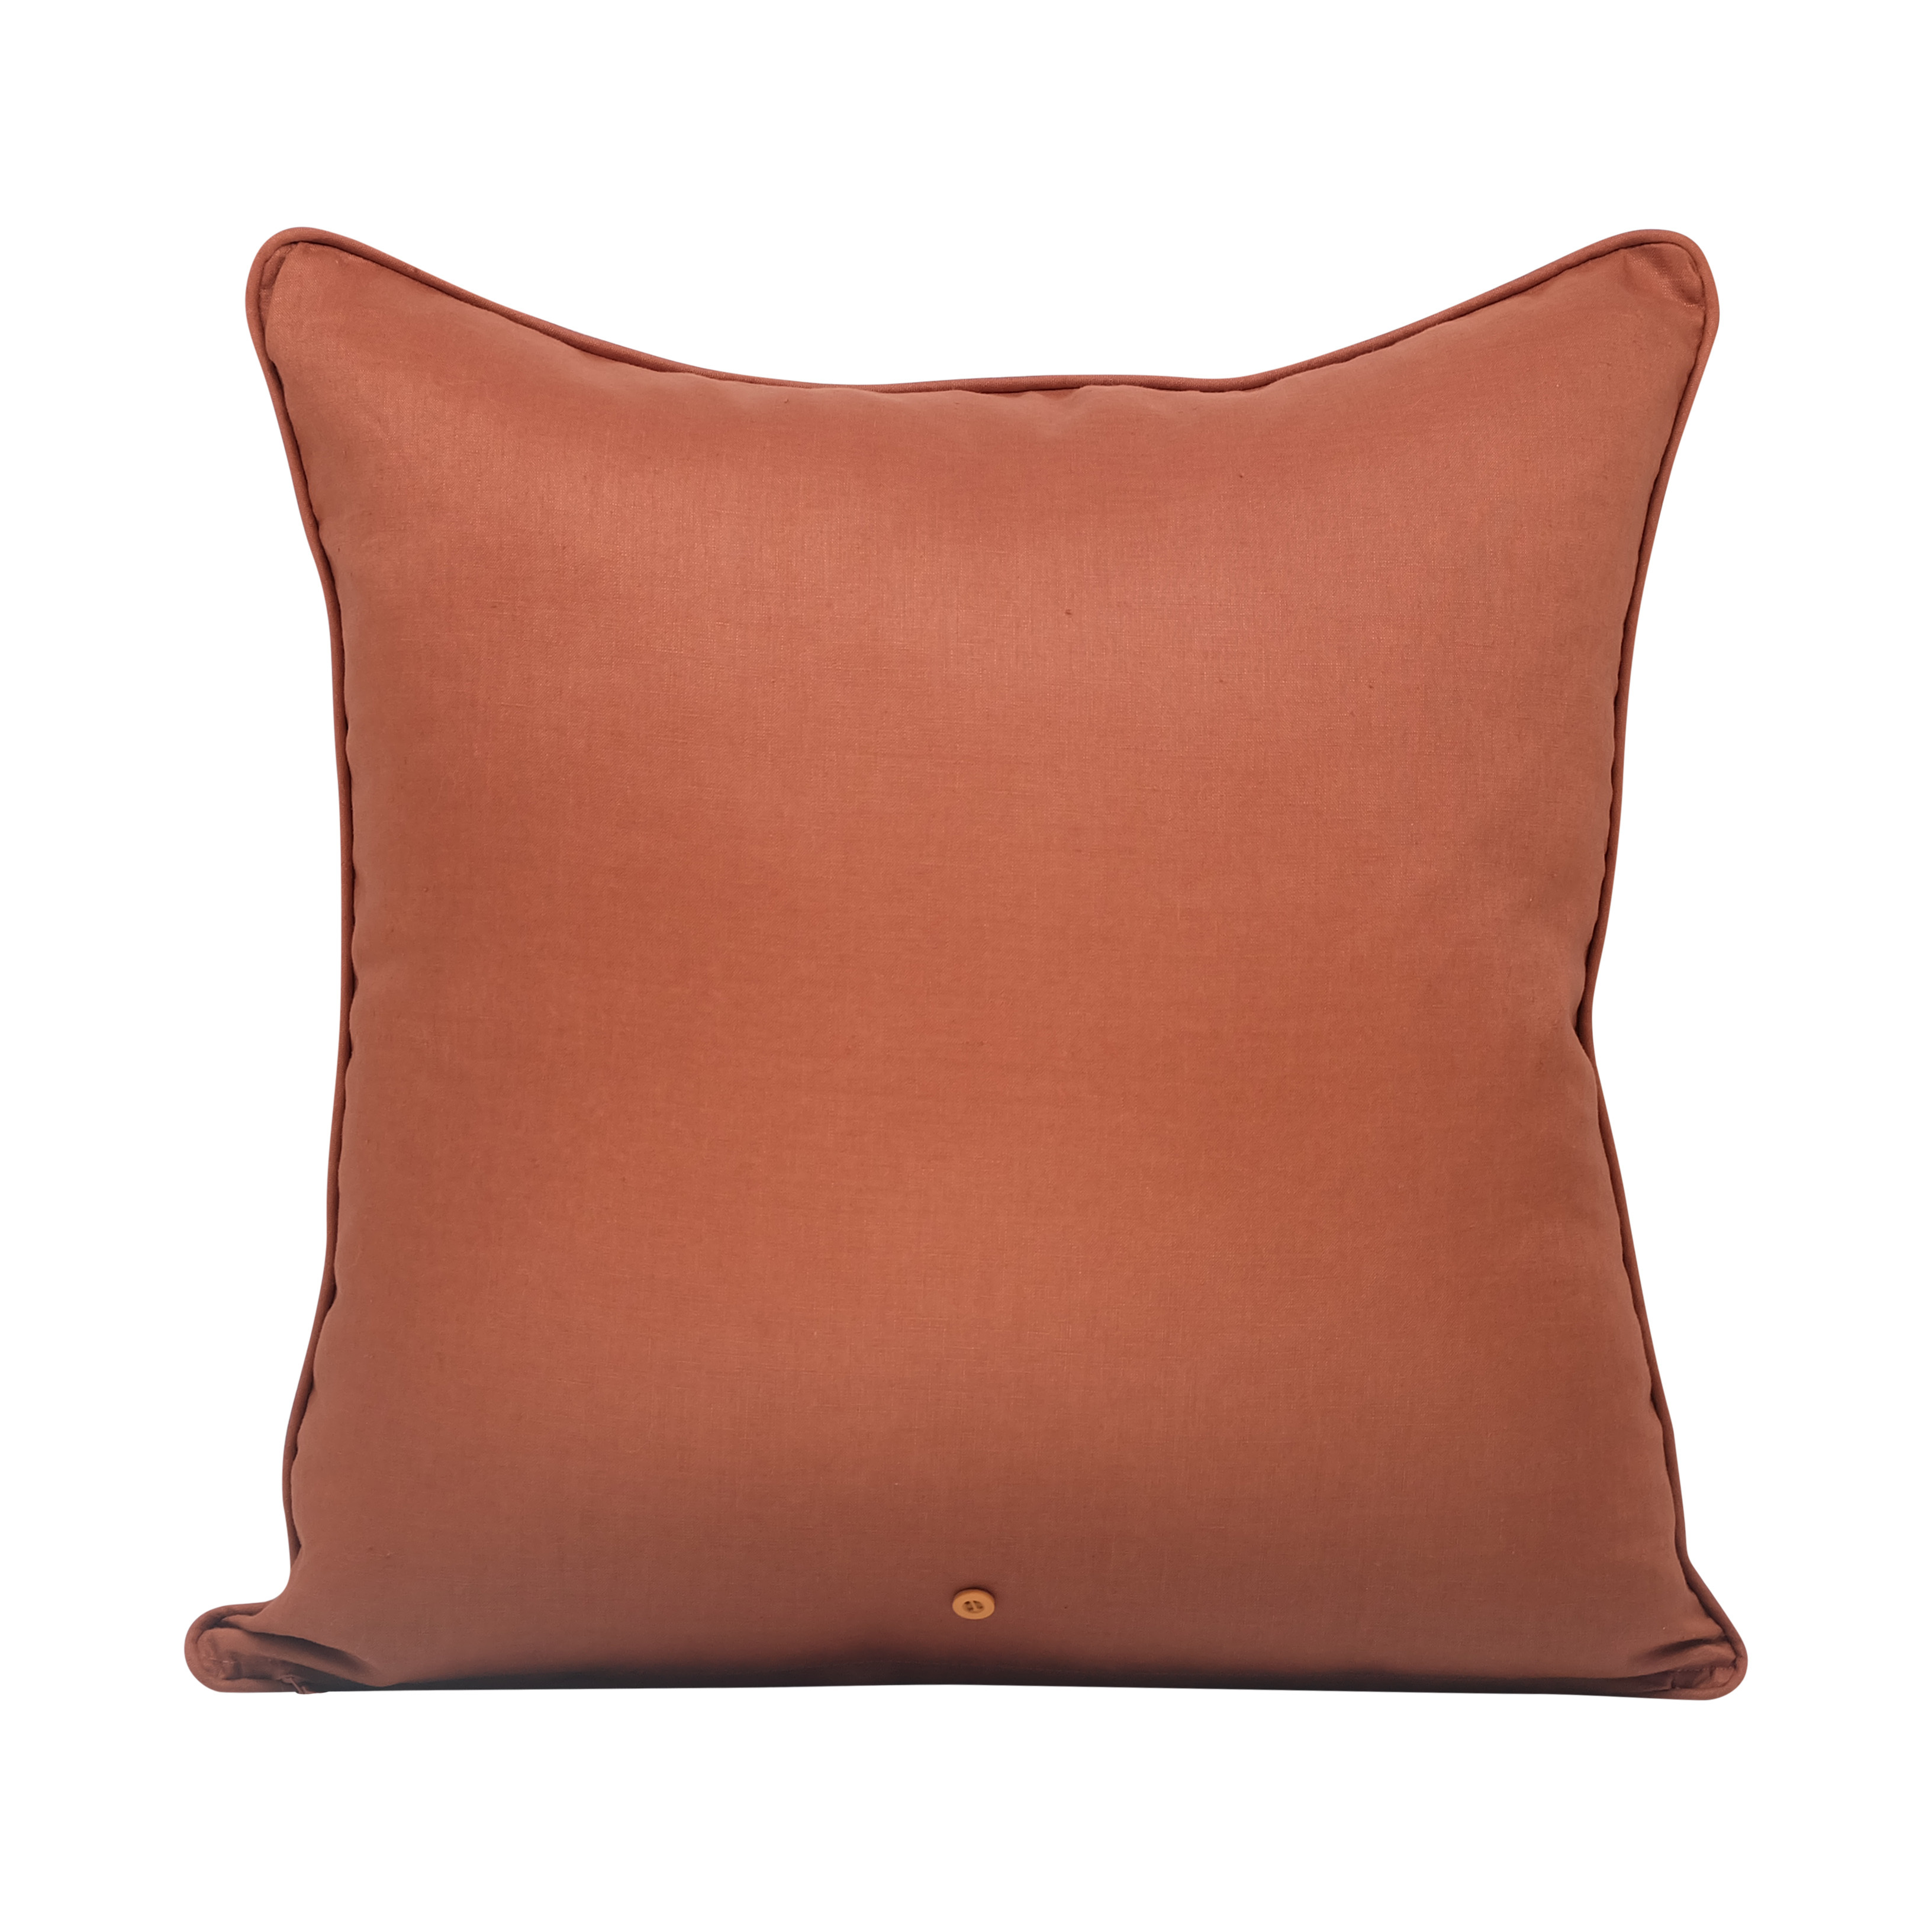 Orange Red Trellis Throw Pillow 18x18 20x20 22x22 24x24 26x26 